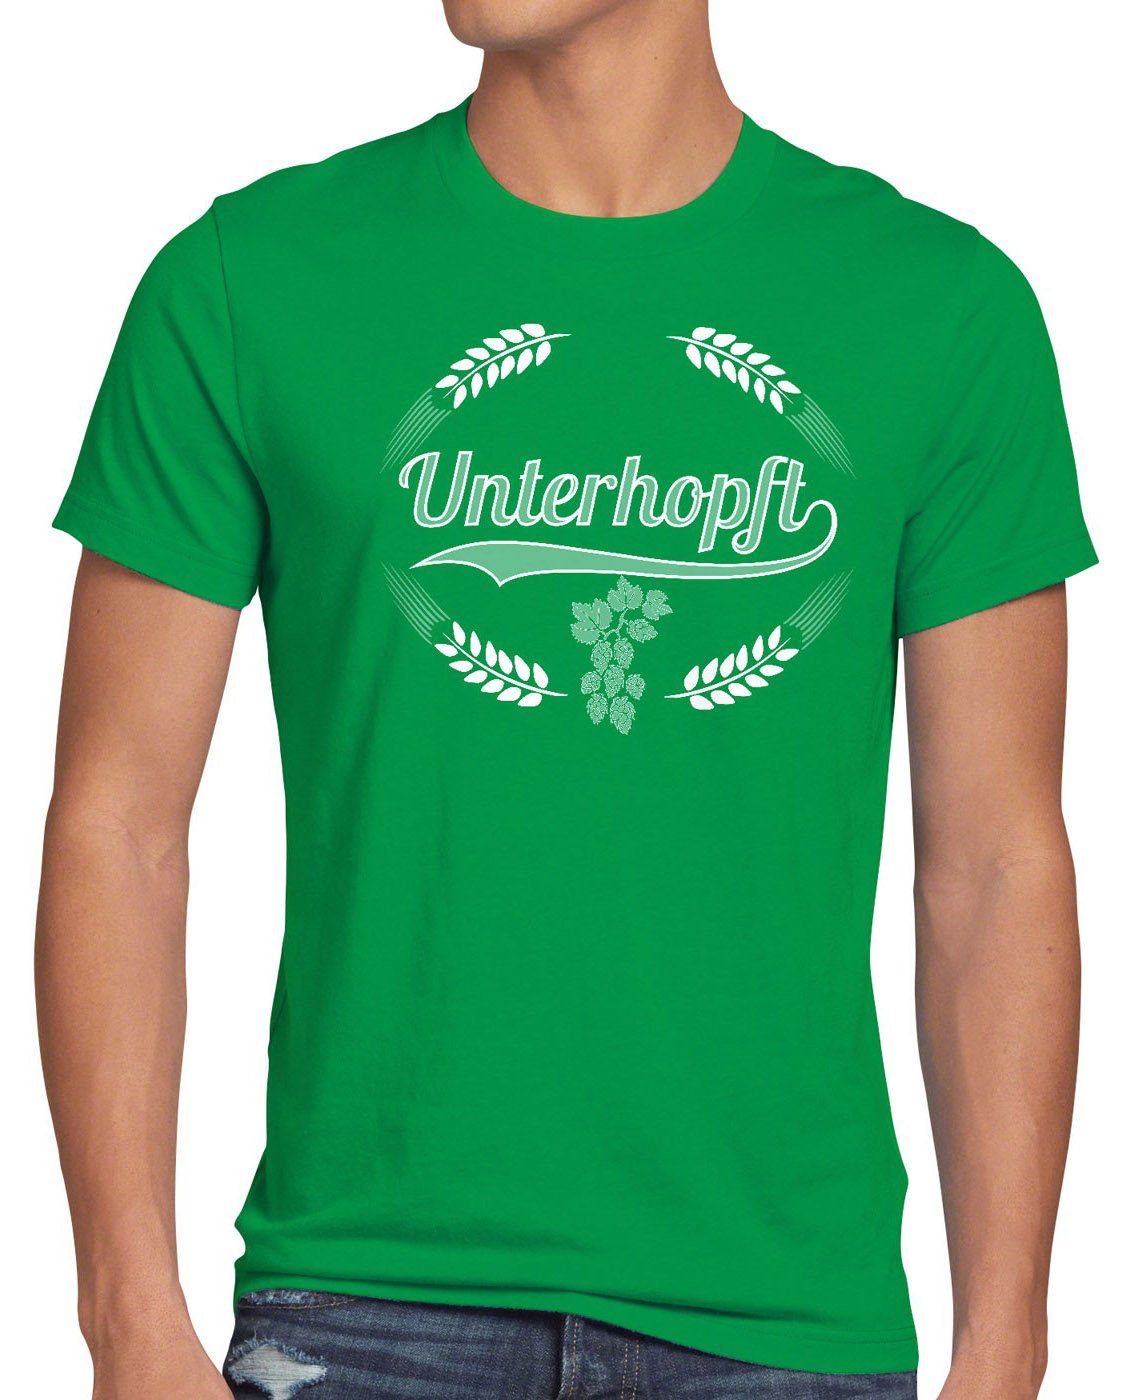 style3 Herren T-Shirt Unterhopft Spruch Fun Bier Hopfen Print-Shirt Fest Funshirt Kult grün Malz Shirt